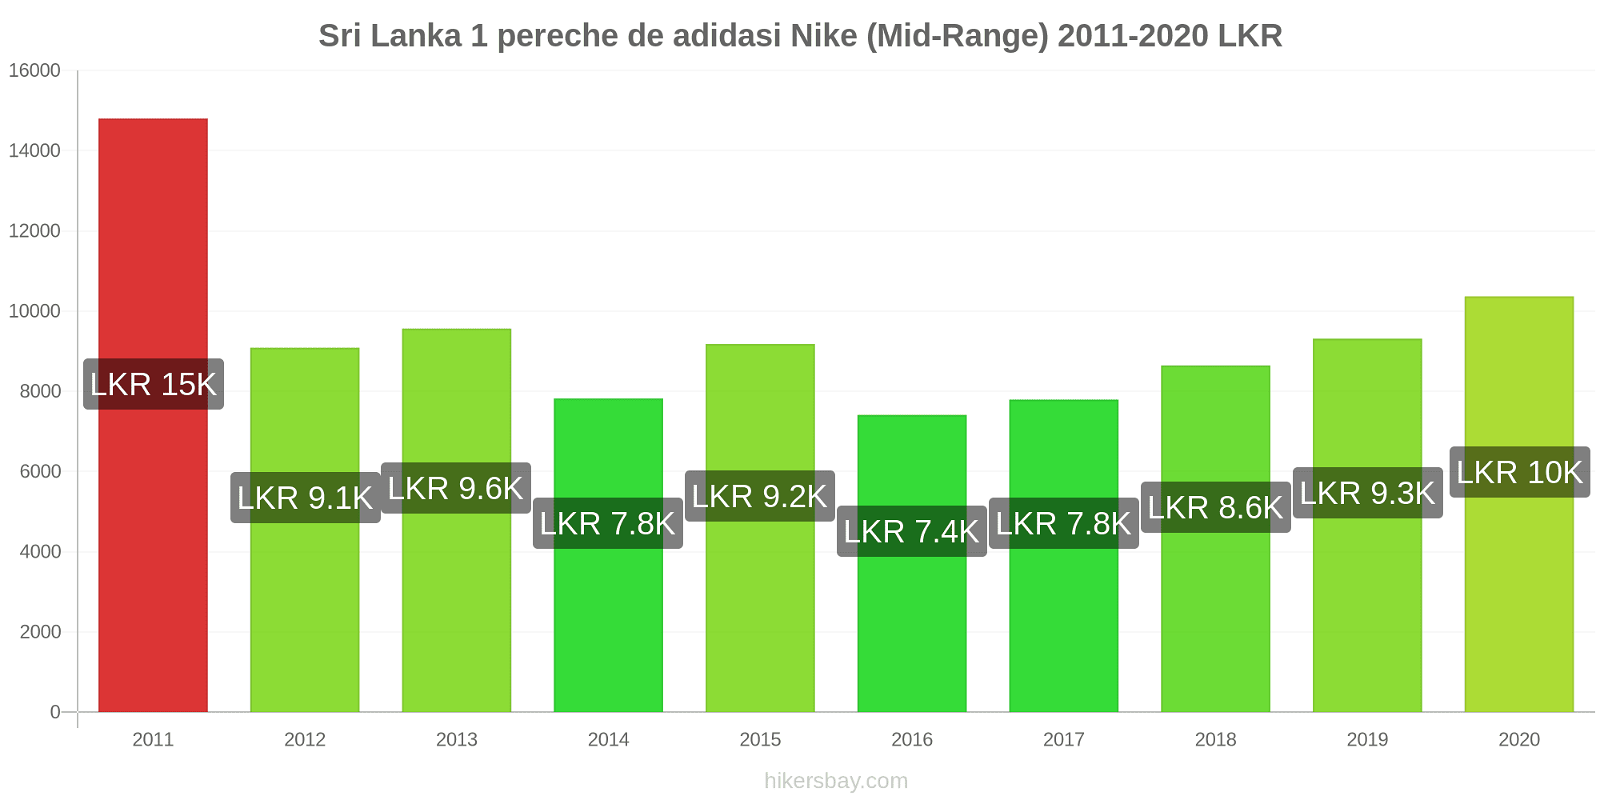 Sri Lanka modificări de preț 1 pereche de adidasi Nike (Mid-Range) hikersbay.com